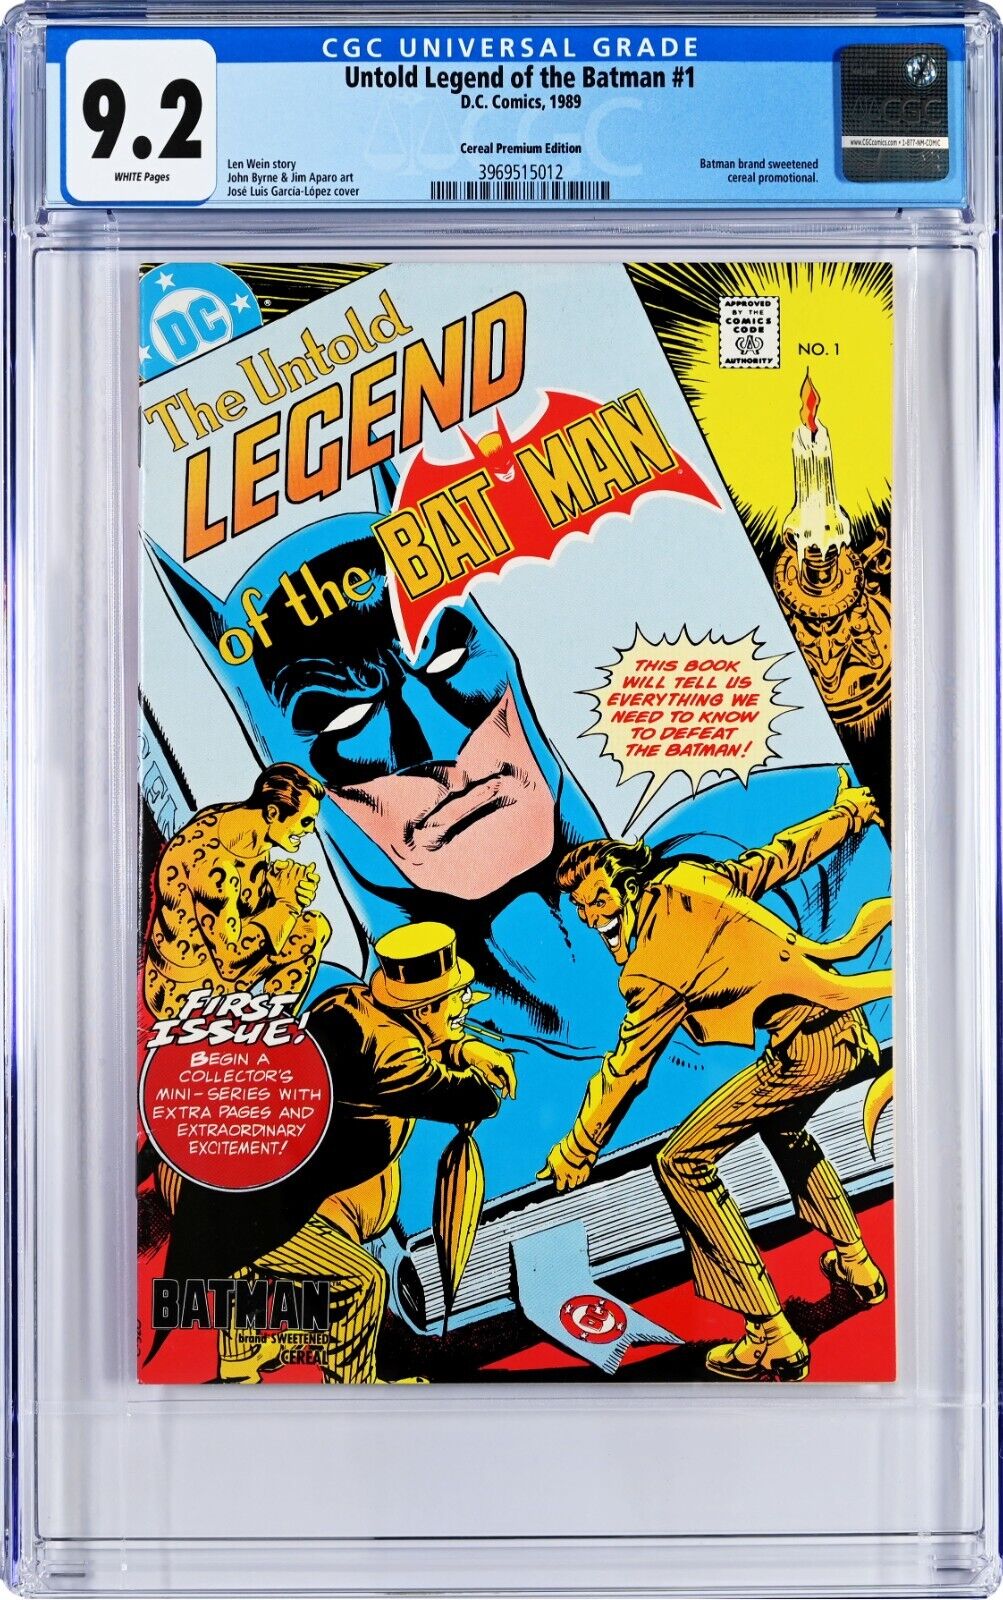 Untold Legend of the Batman #1 CGC 9.2 (1989, DC) Len Wein Story, Cereal Premium